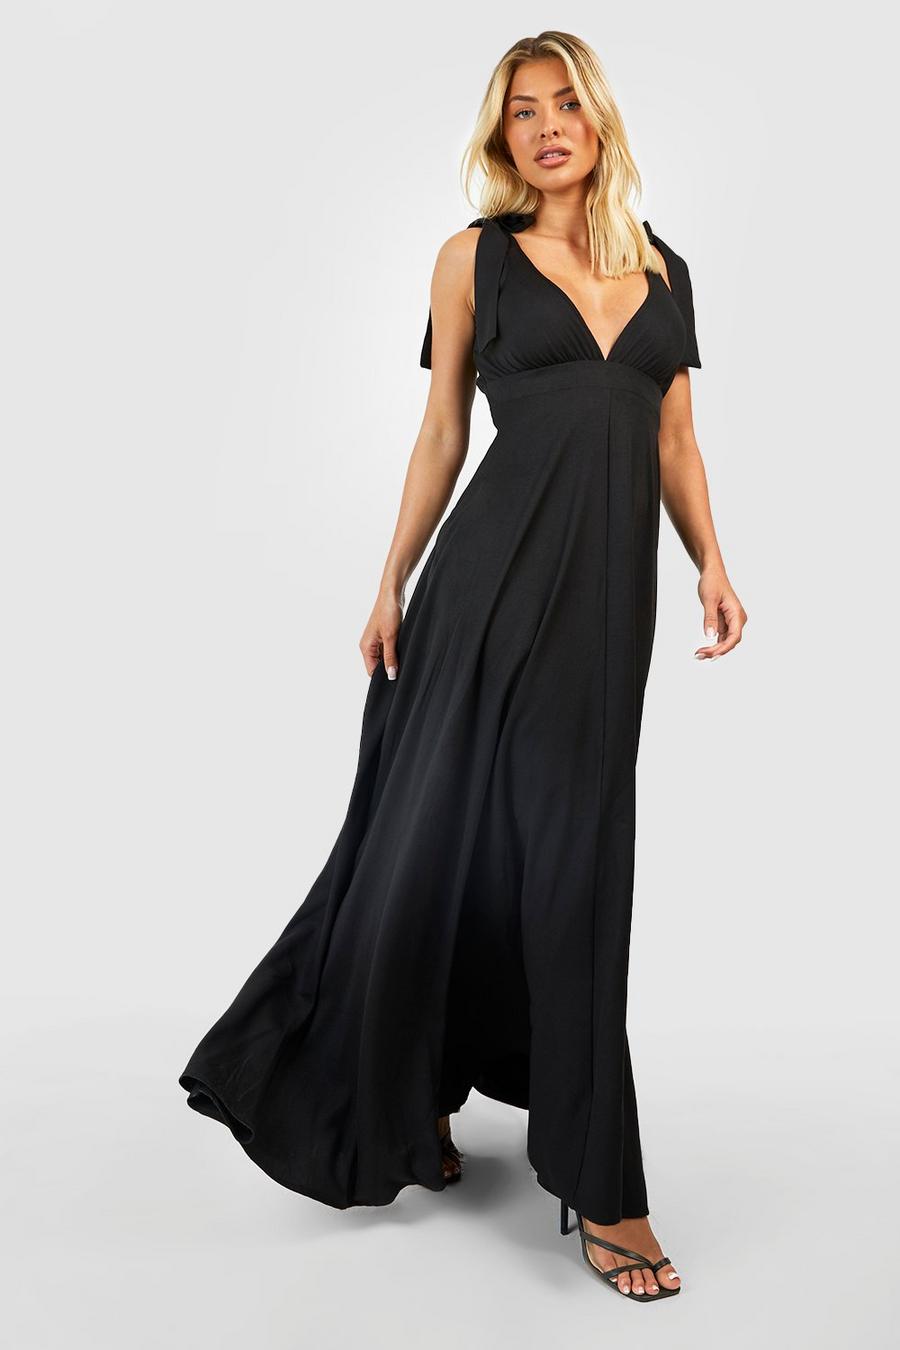 שחור negro שמלת מקסי עם מחשוף עמוק וכתפיות עם קשירה